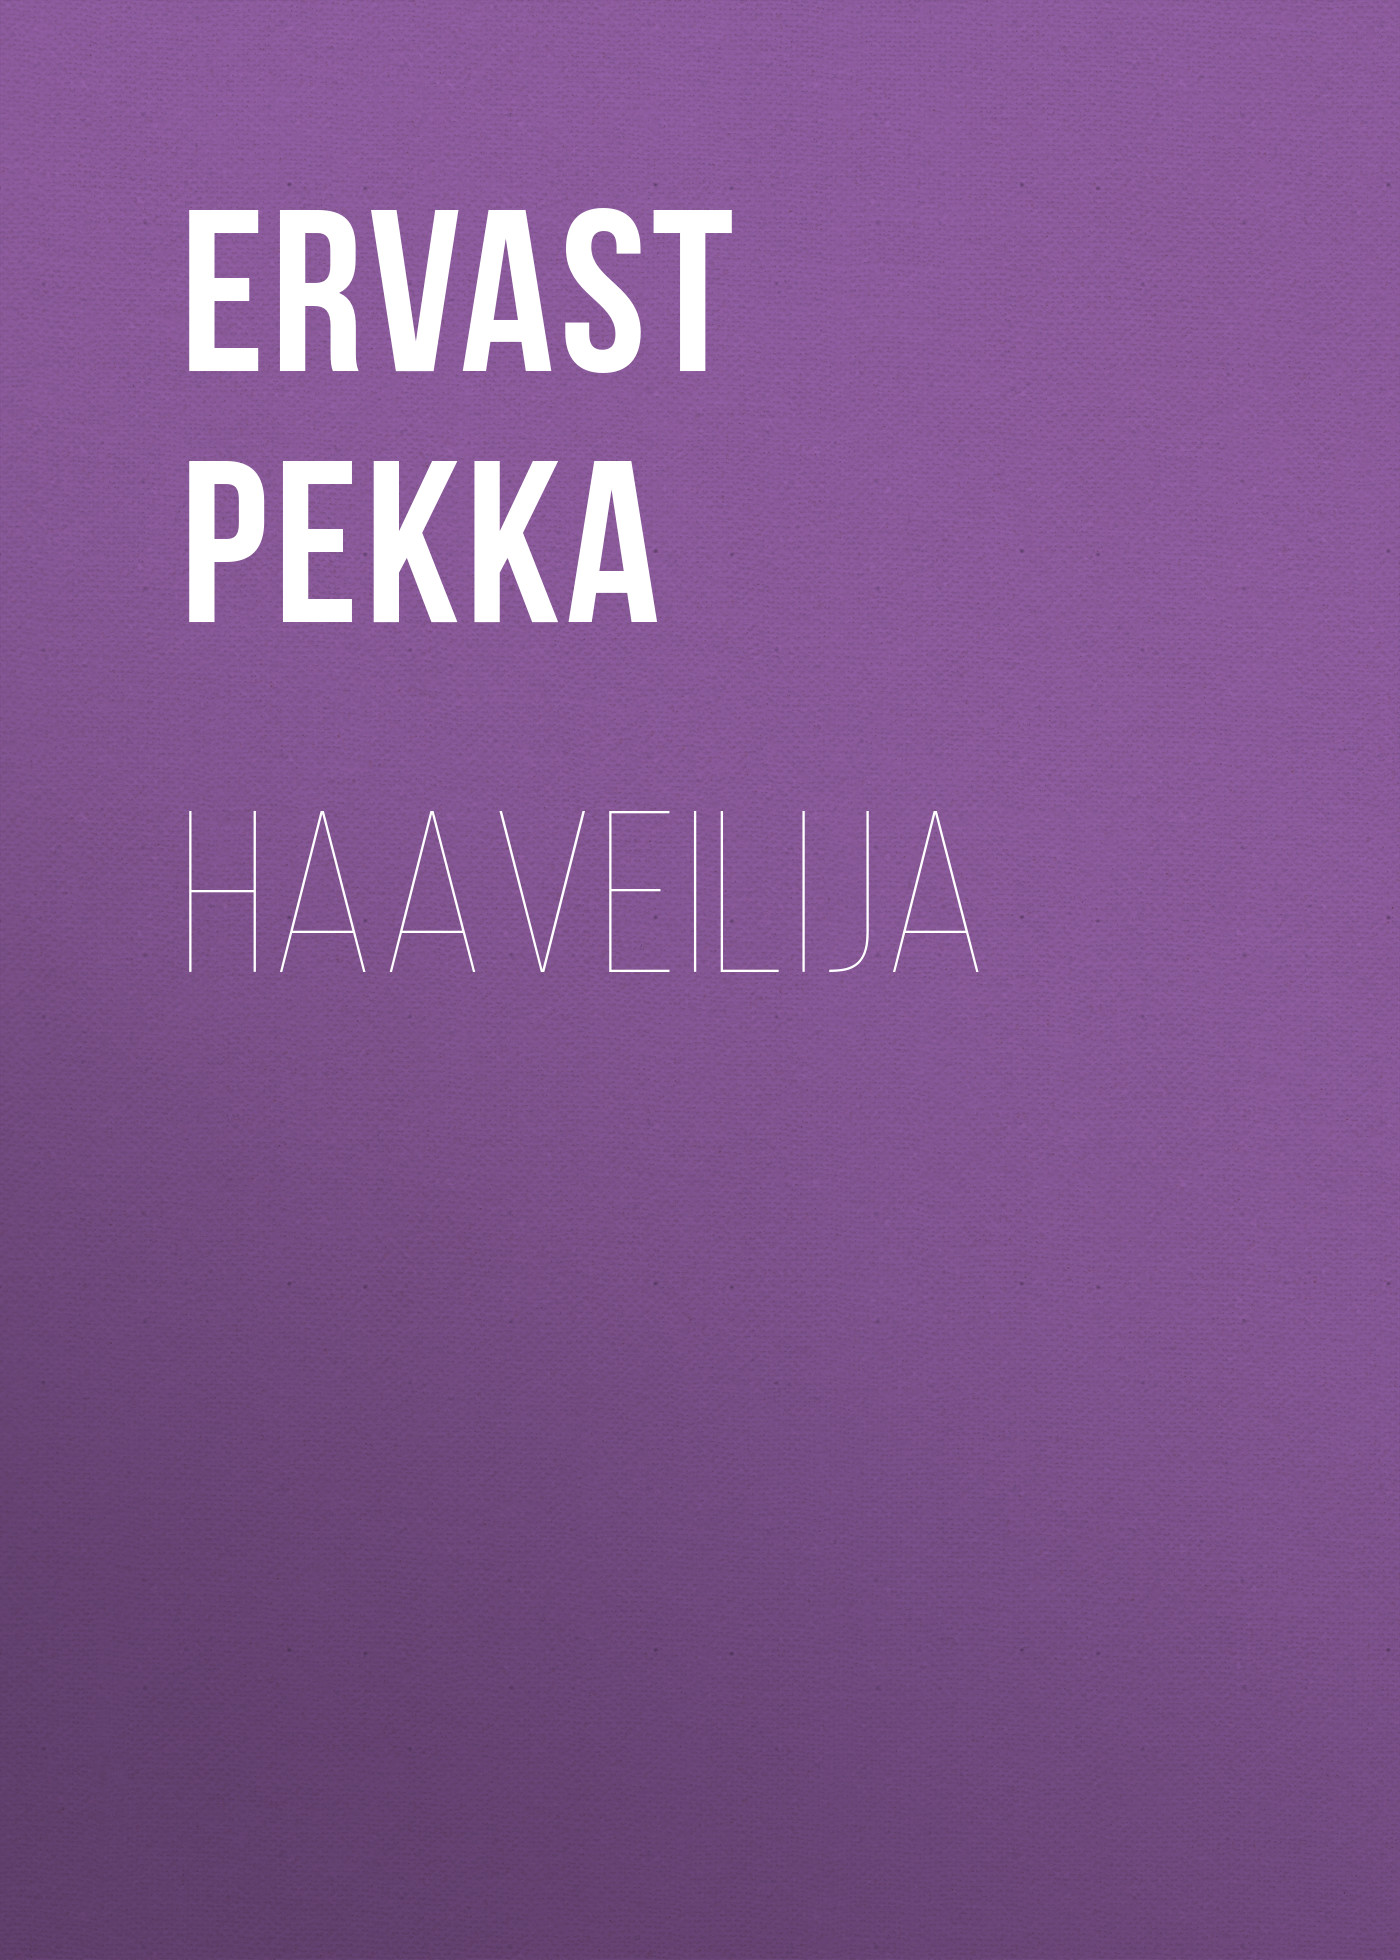 Книга Haaveilija из серии , созданная Pekka Ervast, может относится к жанру Зарубежная старинная литература, Зарубежная классика. Стоимость электронной книги Haaveilija с идентификатором 24714433 составляет 0 руб.